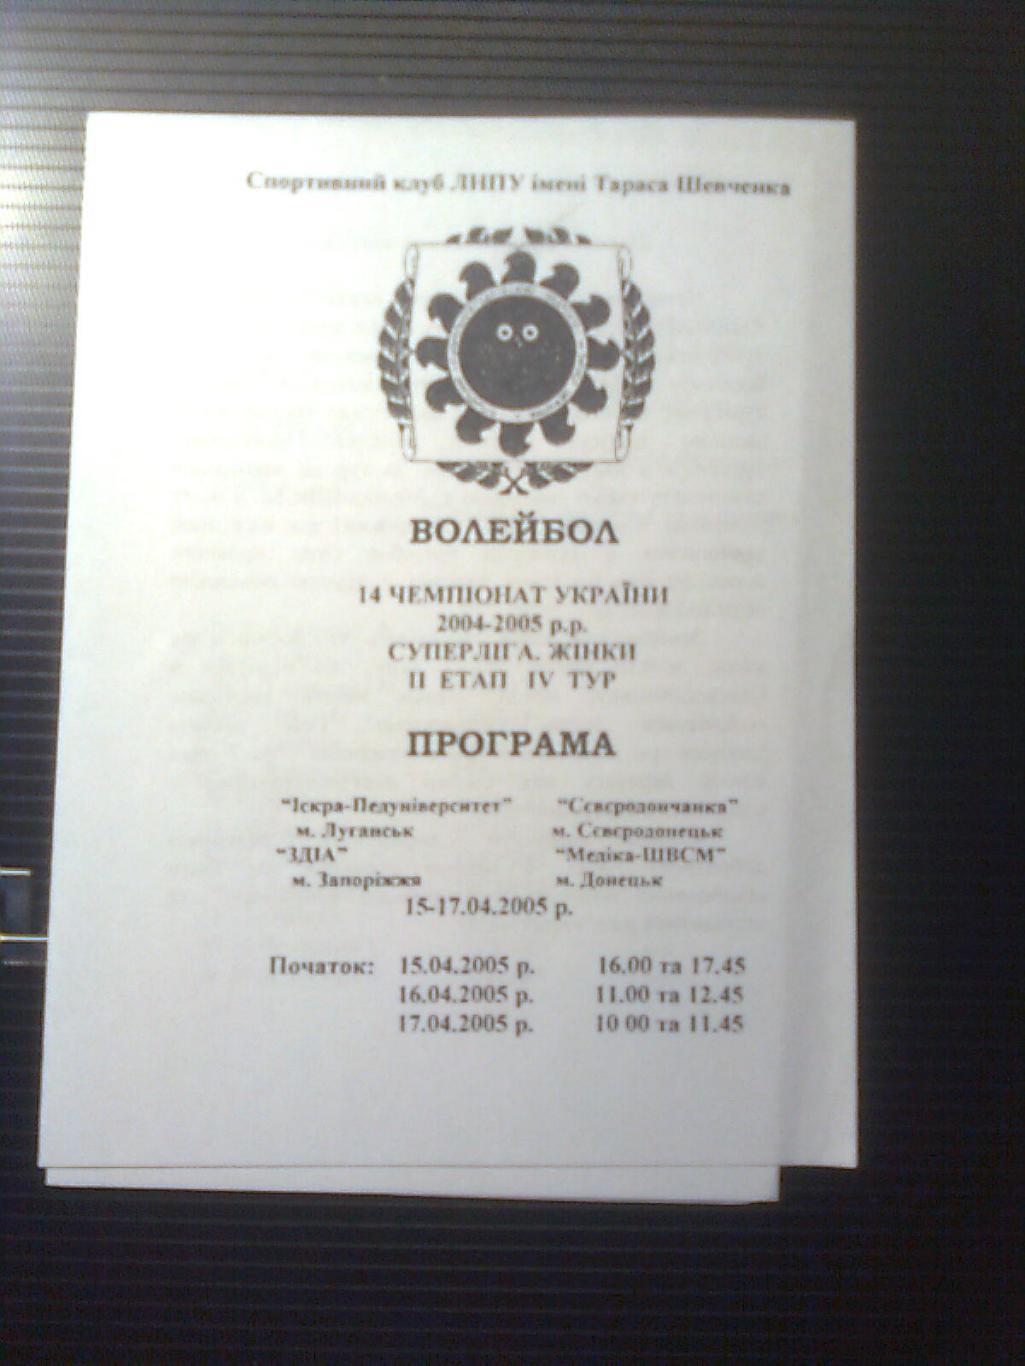 14 Чемпионат Украины по волейболу 2004-2005 г.г.